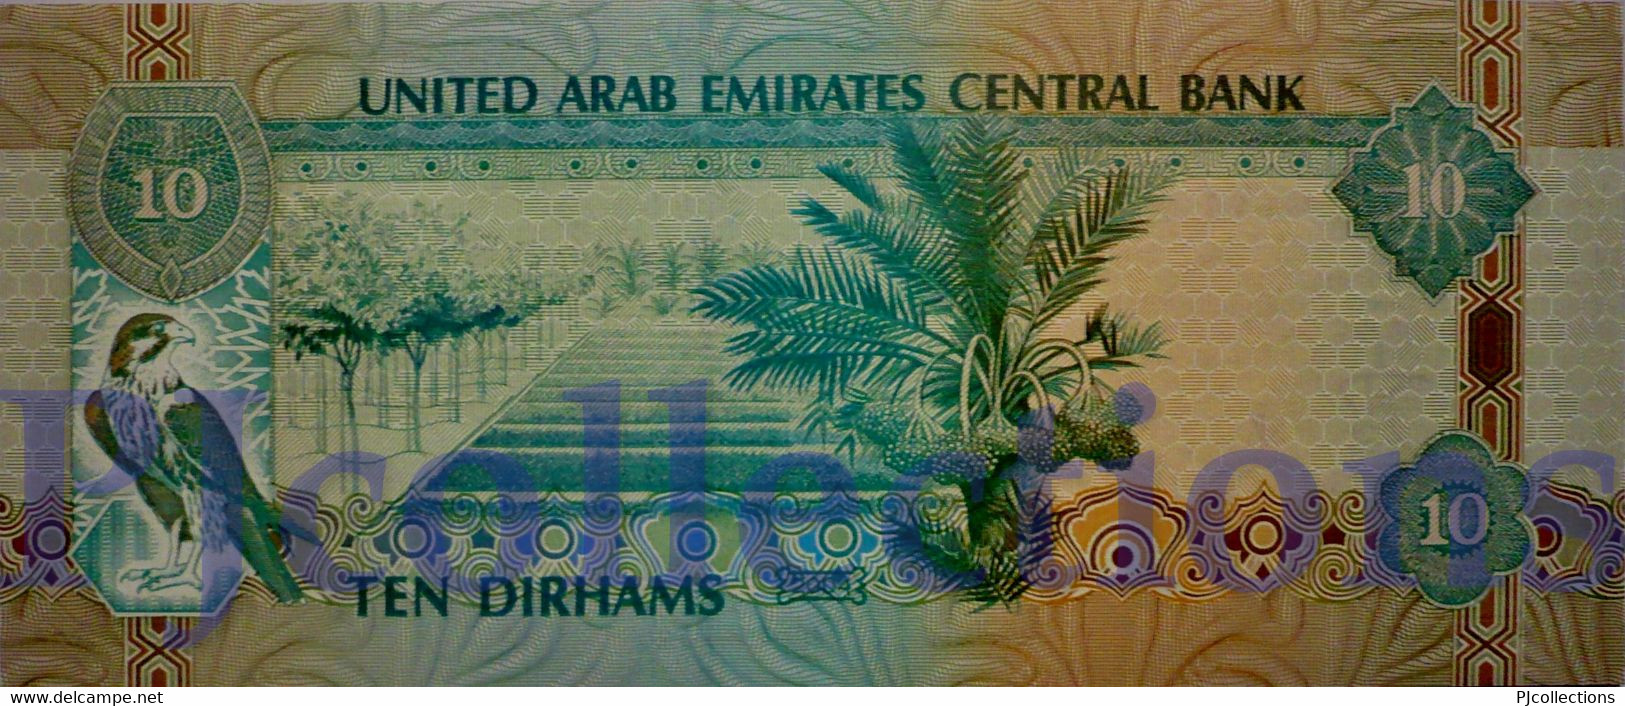 UNITED ARAB EMIRATES 10 DIRHAMS 2004 PICK 20c UNC - United Arab Emirates